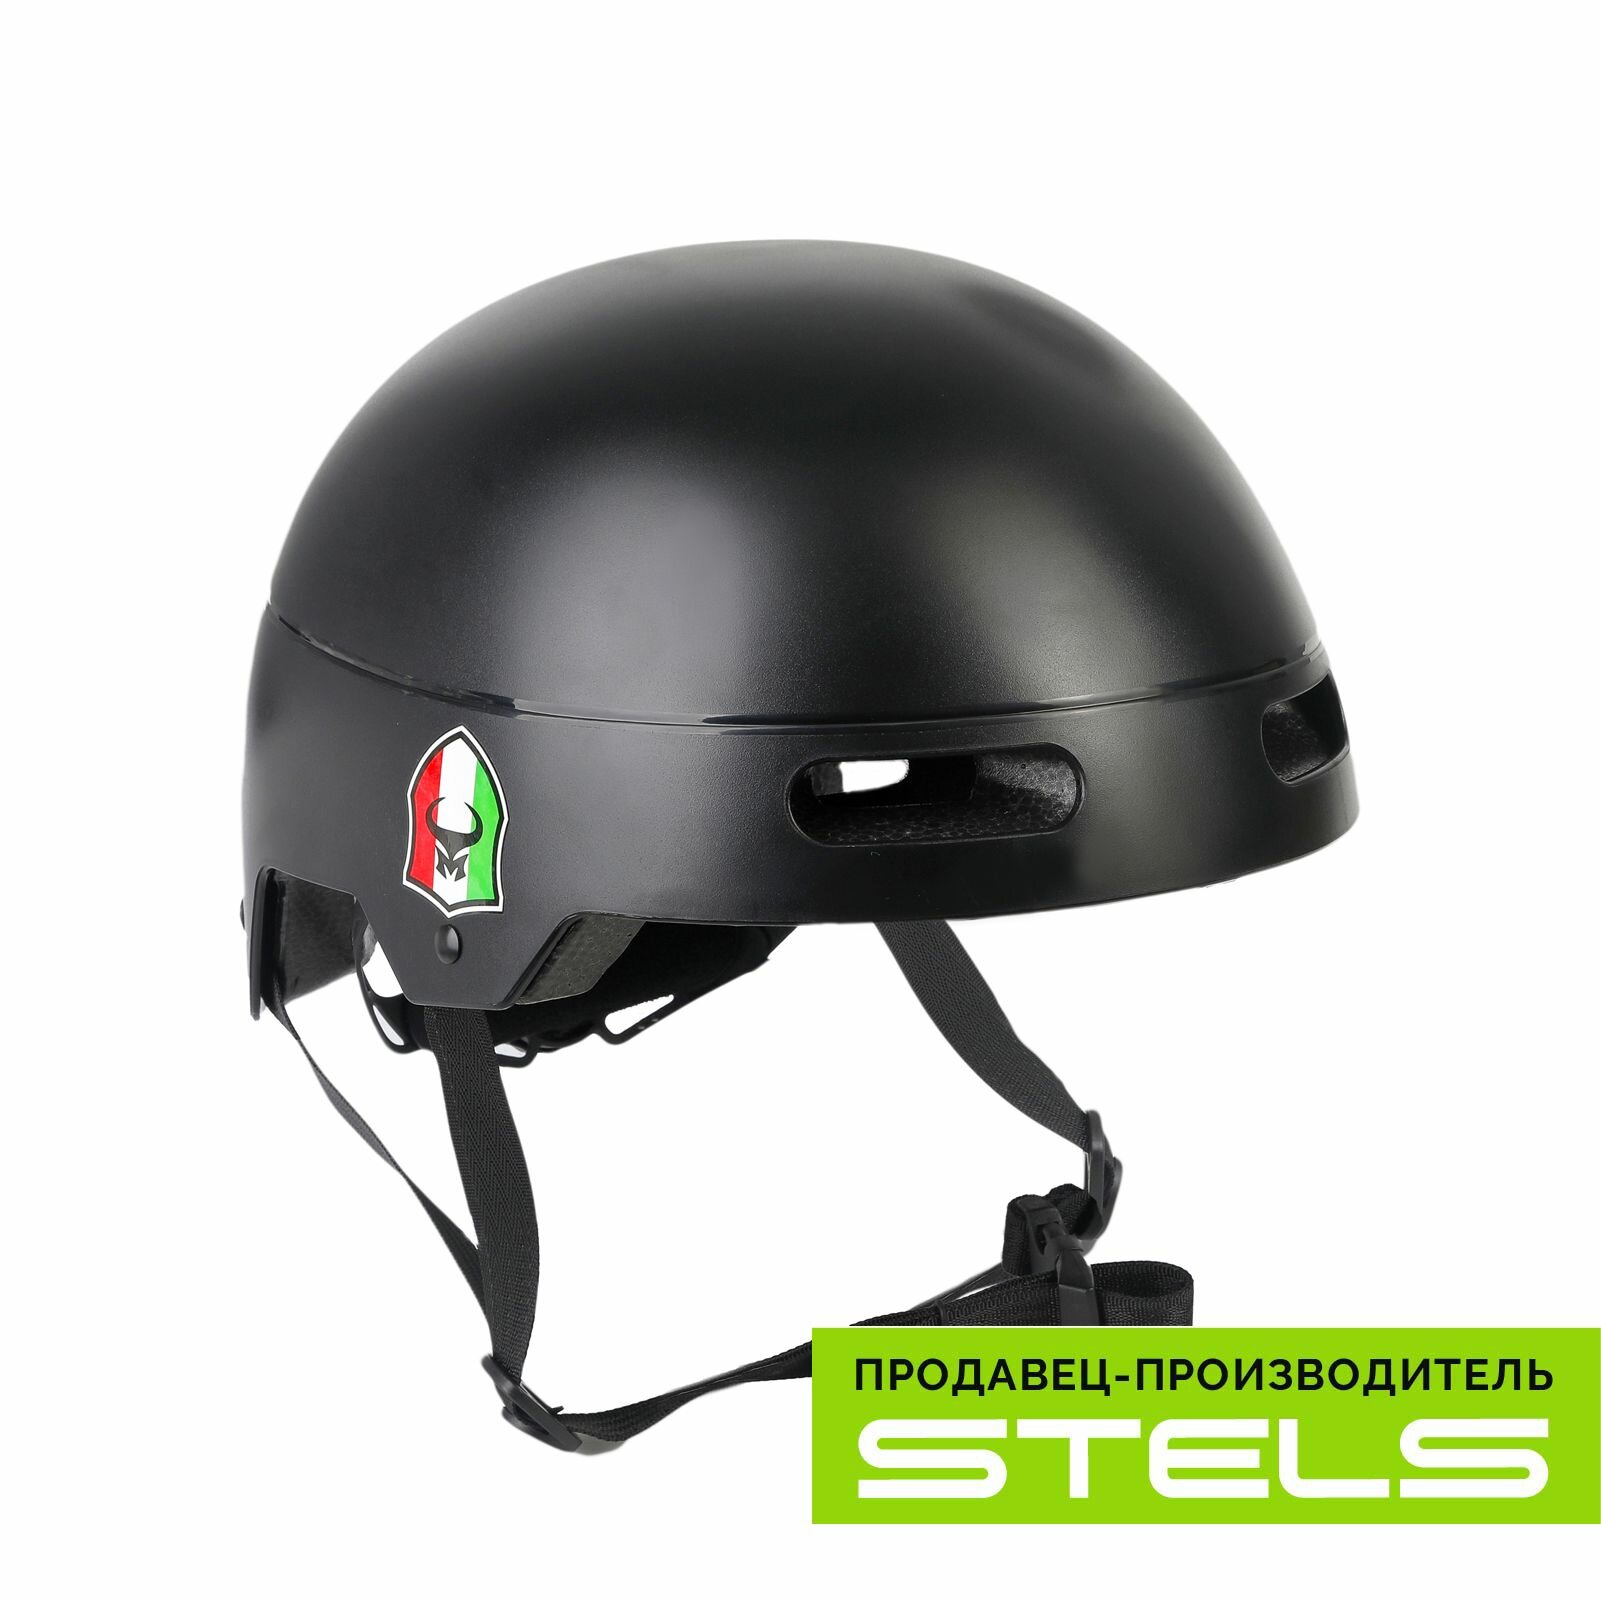 Шлем защитный для катания на велосипеде FSD-HL052 (in-mold) чёрный, размер L NEW